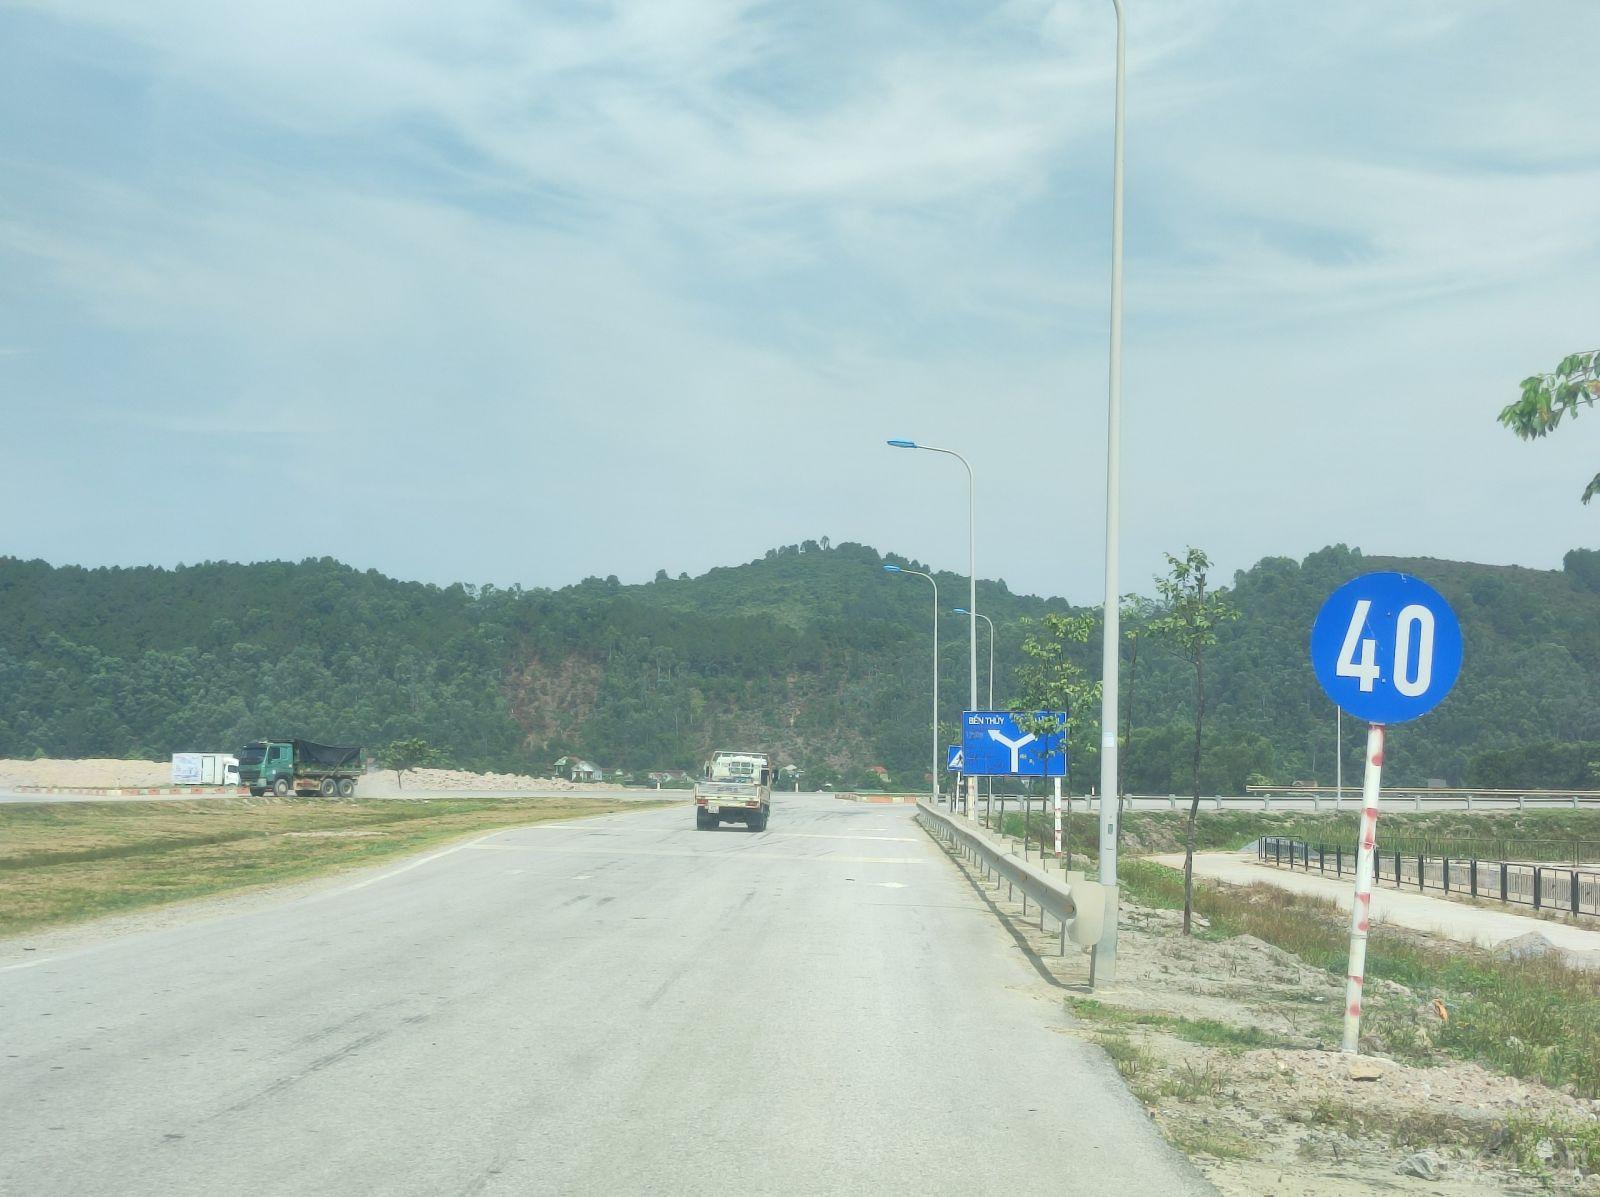 Tương tự, tại khu vực nút giao thông giao nhau với QL1 khoảng hơn 50m trên địa phận huyện Hưng Nguyên cũng xuất hiện biển báo tốc độ tối thiểu 40km/h 